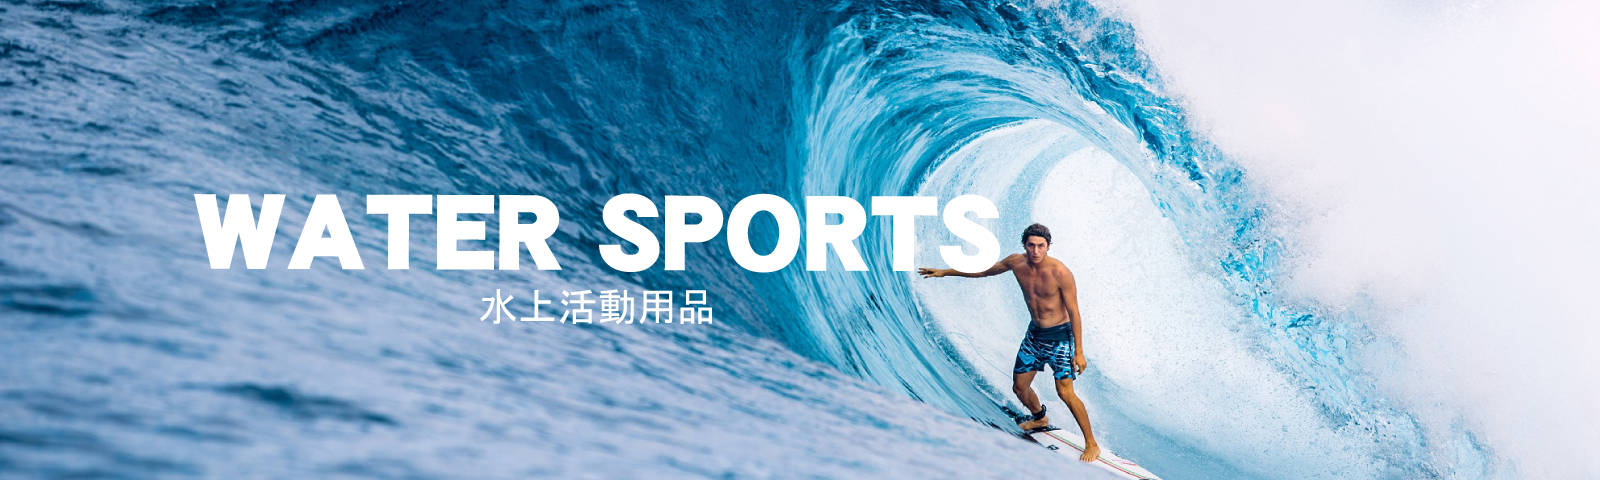 ◤ 水上活動 / Water Sports